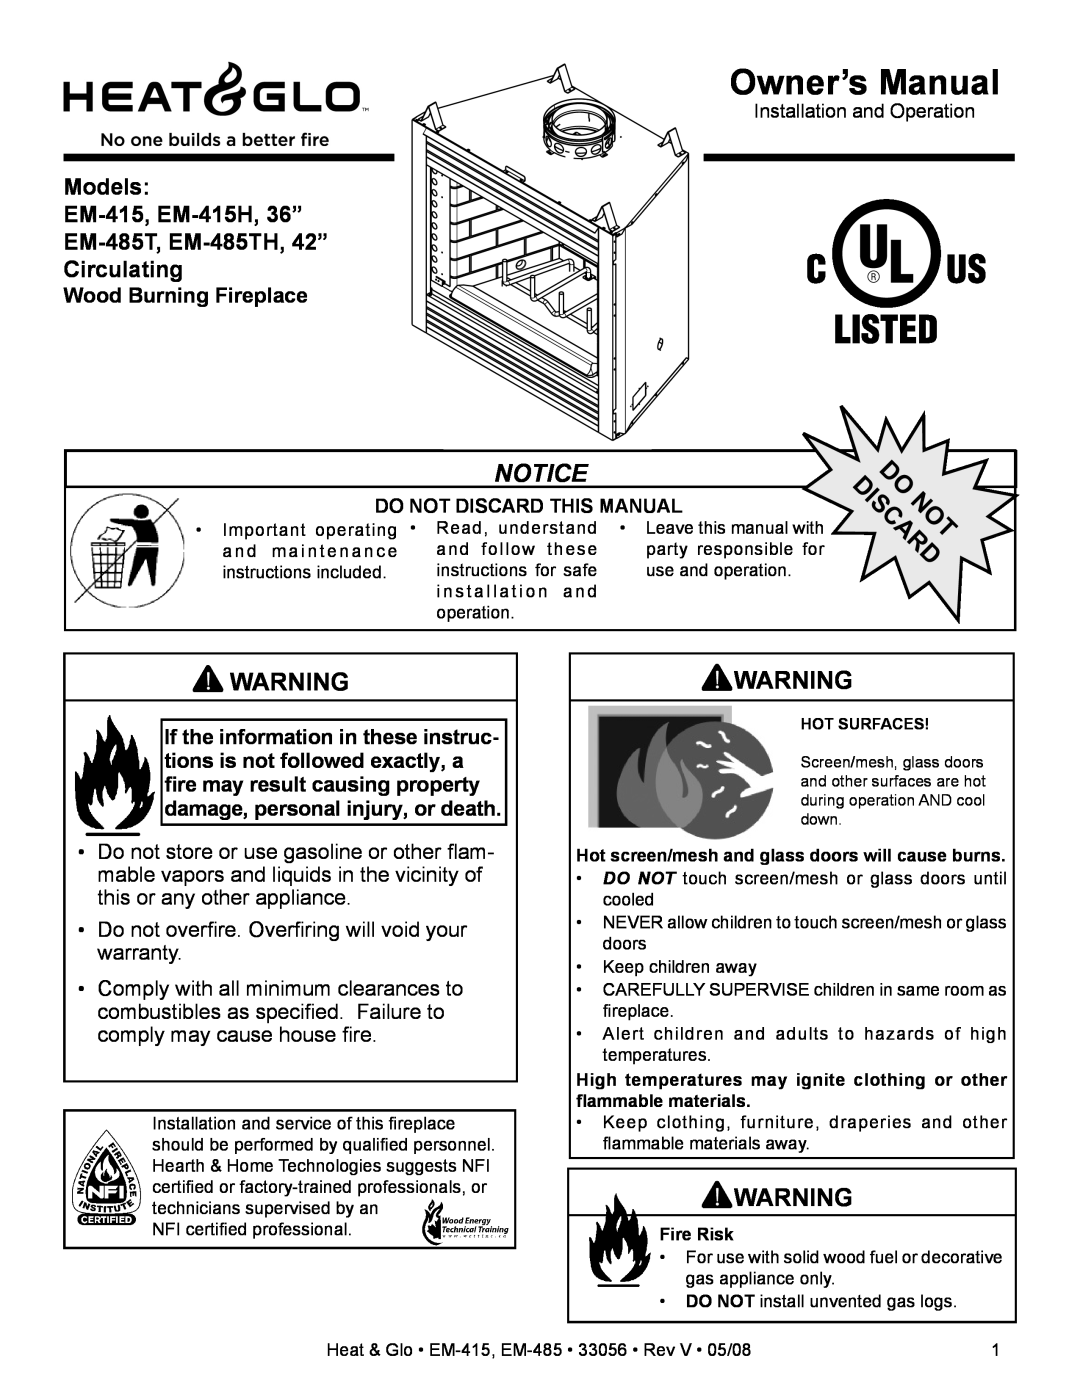 Heat & Glo LifeStyle owner manual Wood Burning Fireplace, Models EM-415, EM-415H,36” EM-485T, EM-485TH,42”, Circulating 